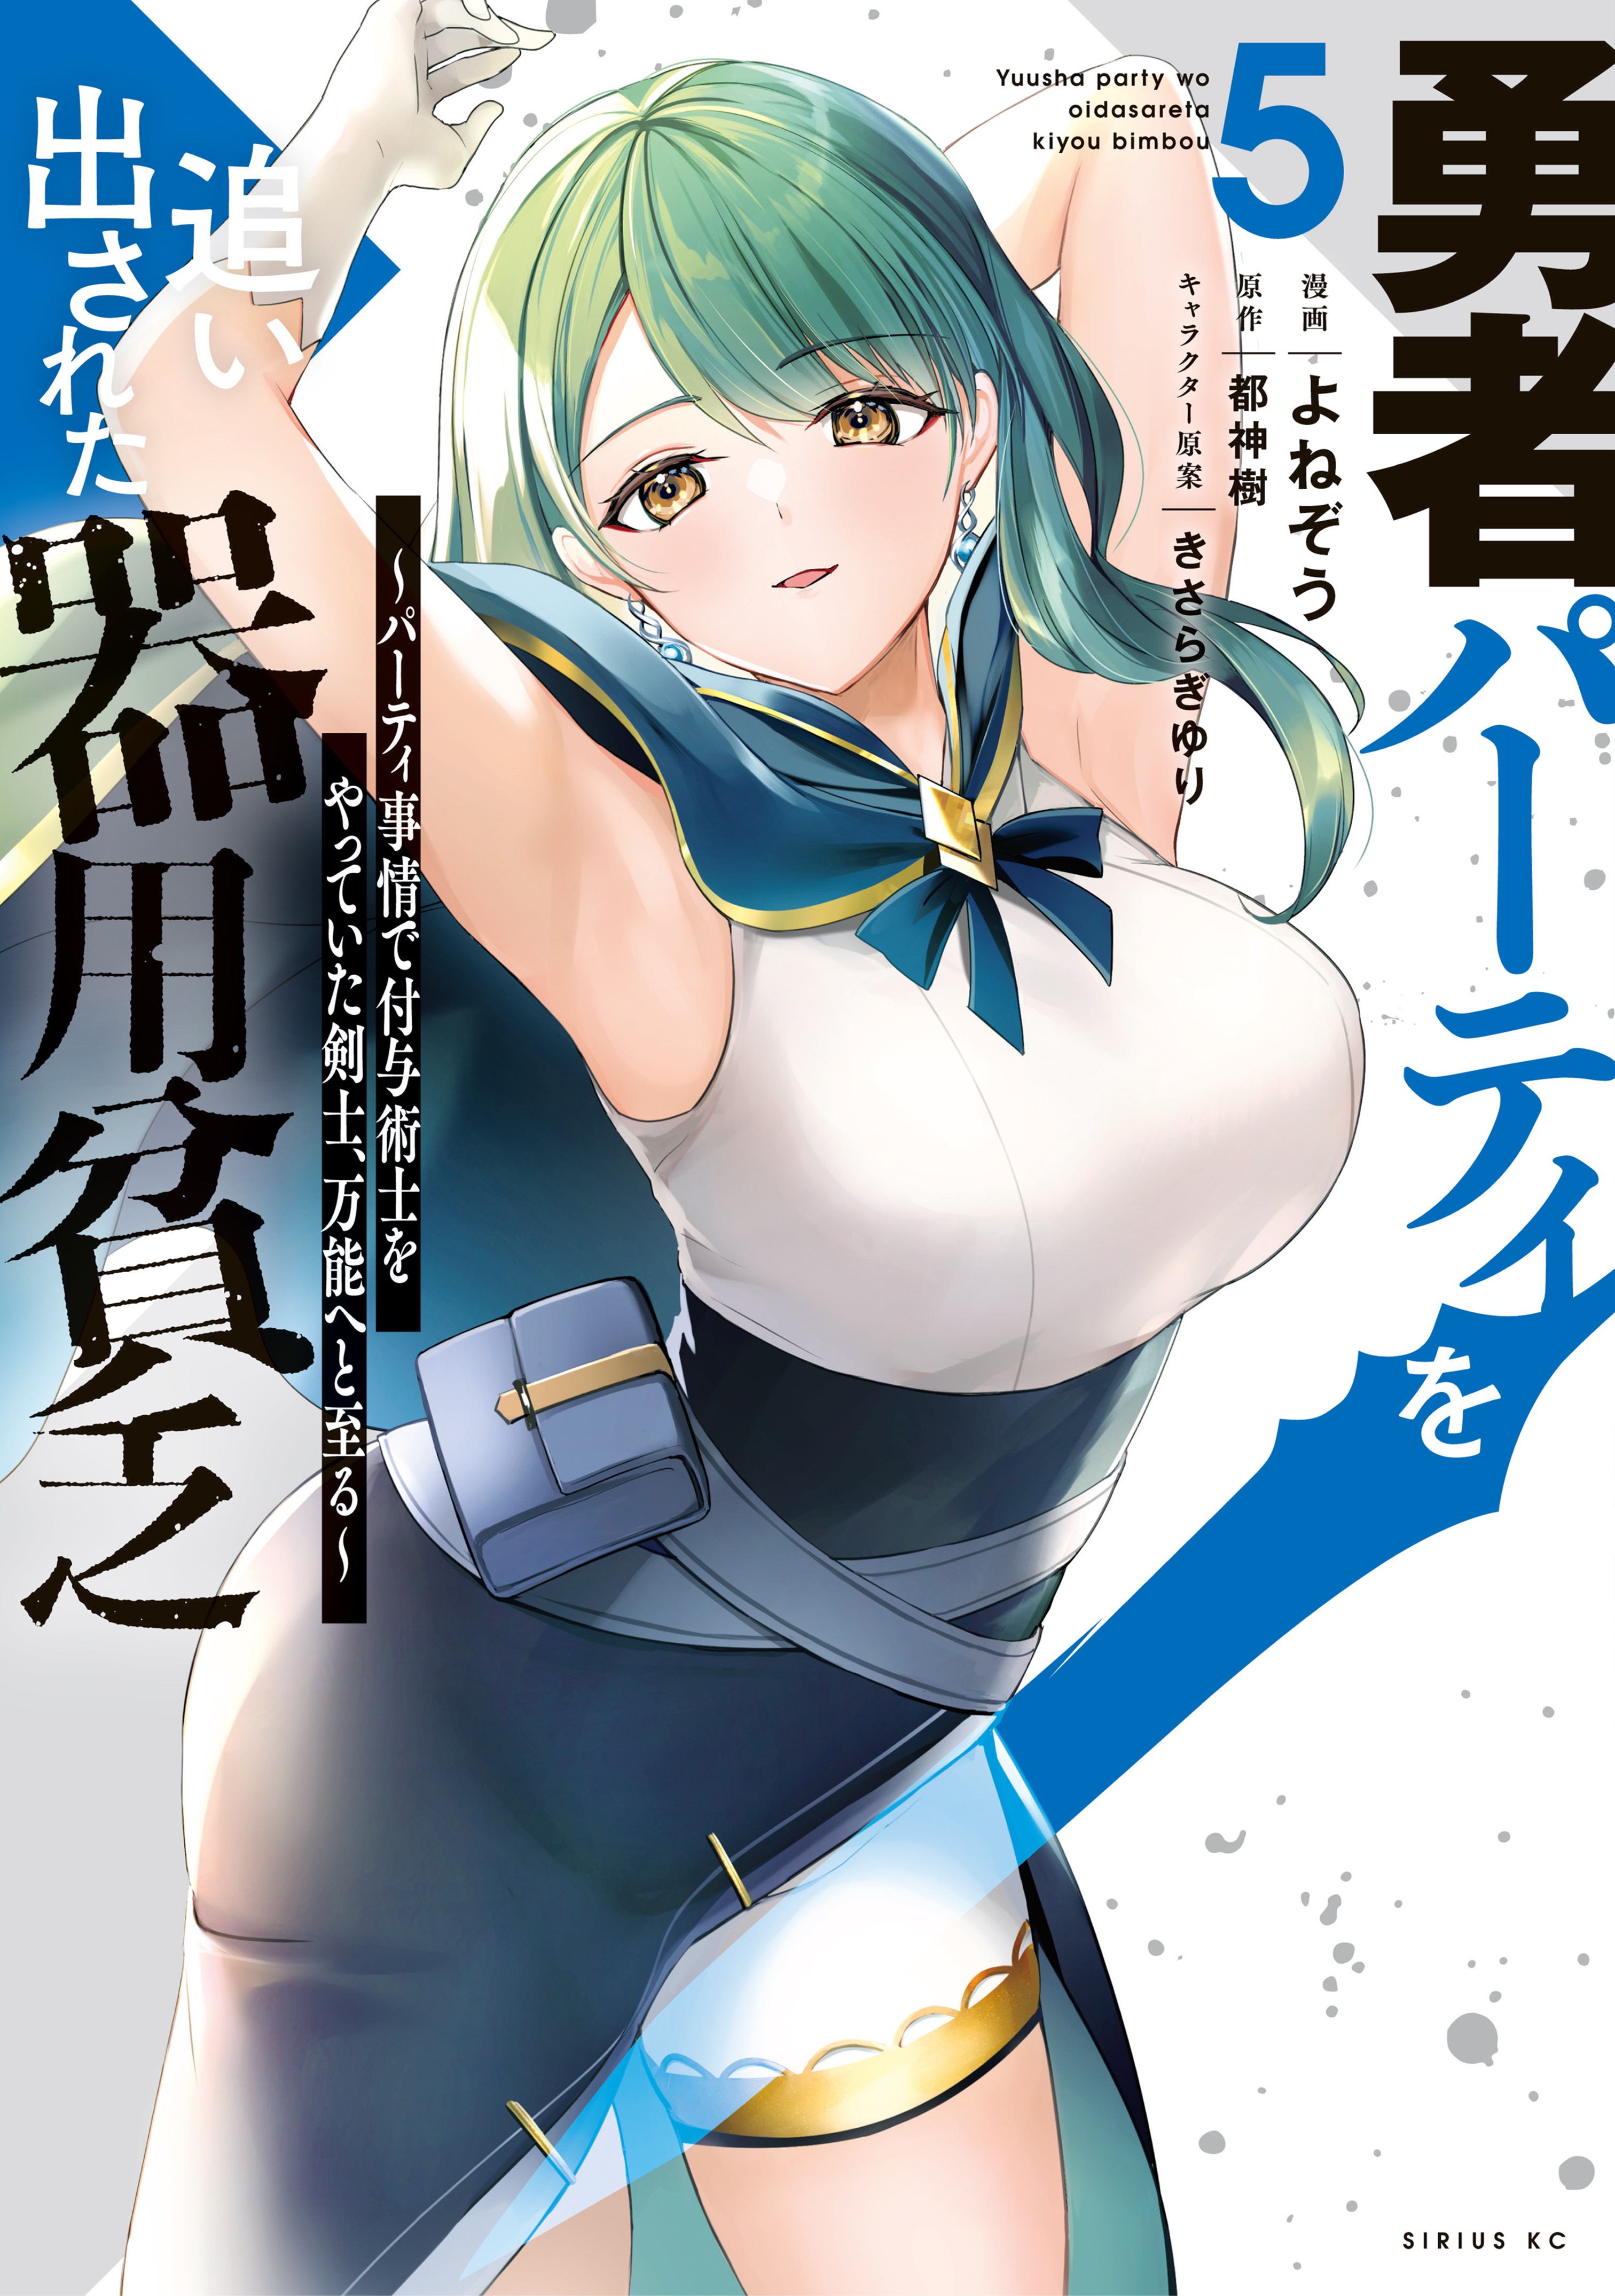 Read Yuusha Party O Oida Sareta Kiyou Binbou Chapter 5 - MangaFreak